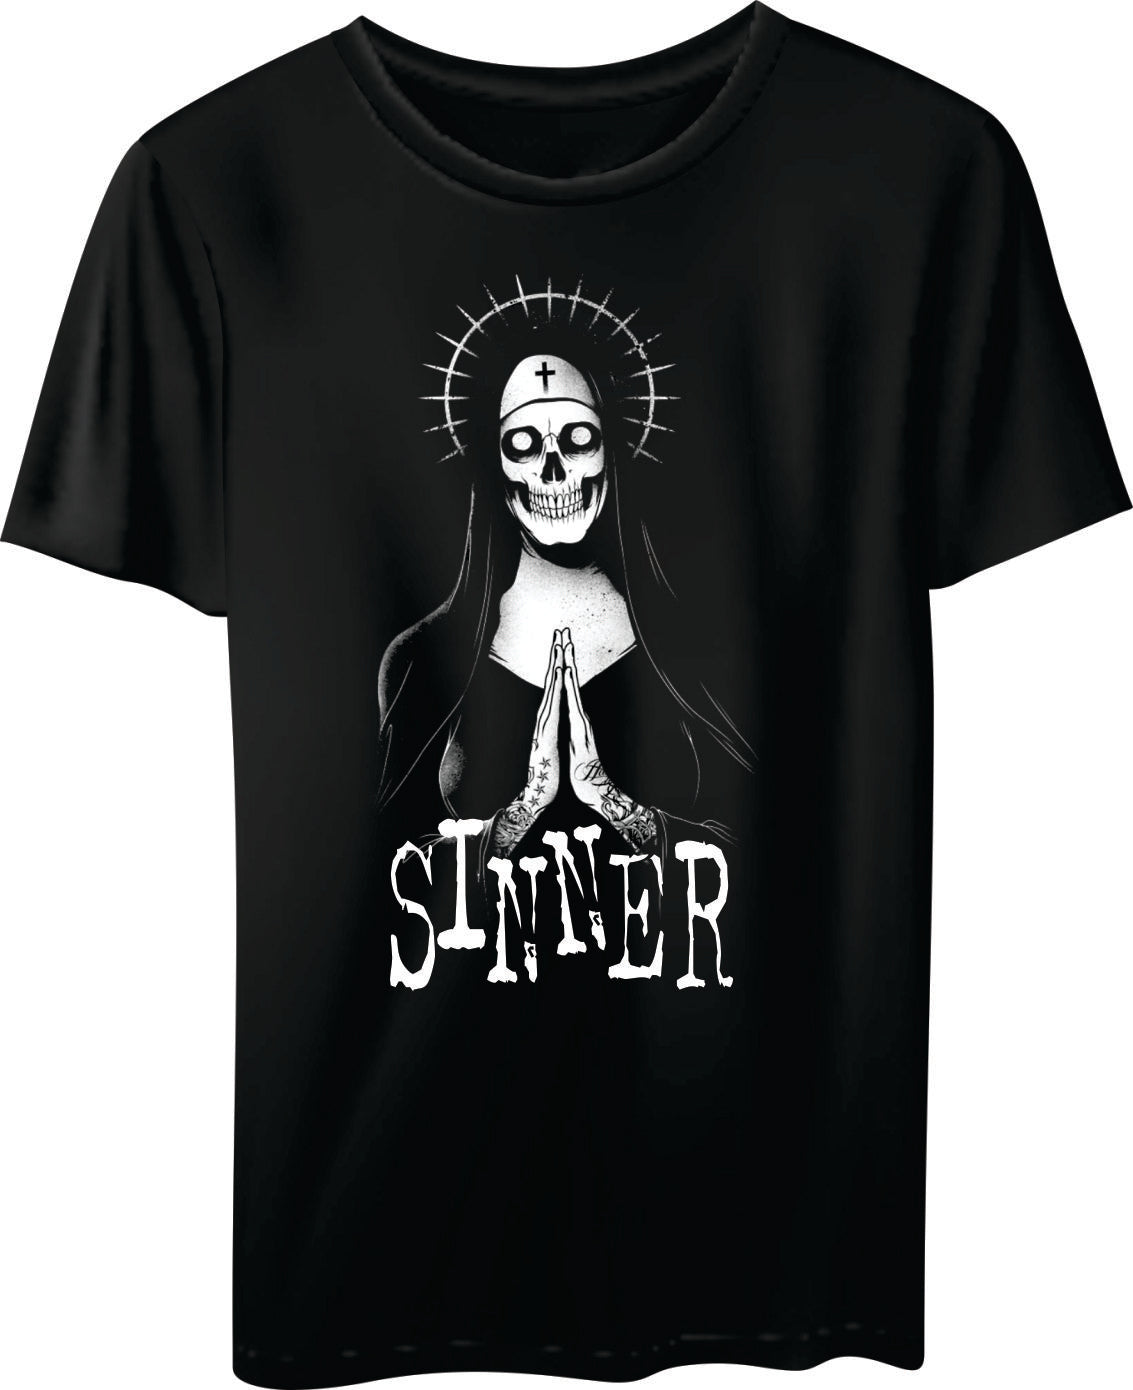 T-SHIRT: Sinner – The Little Shop of Strange